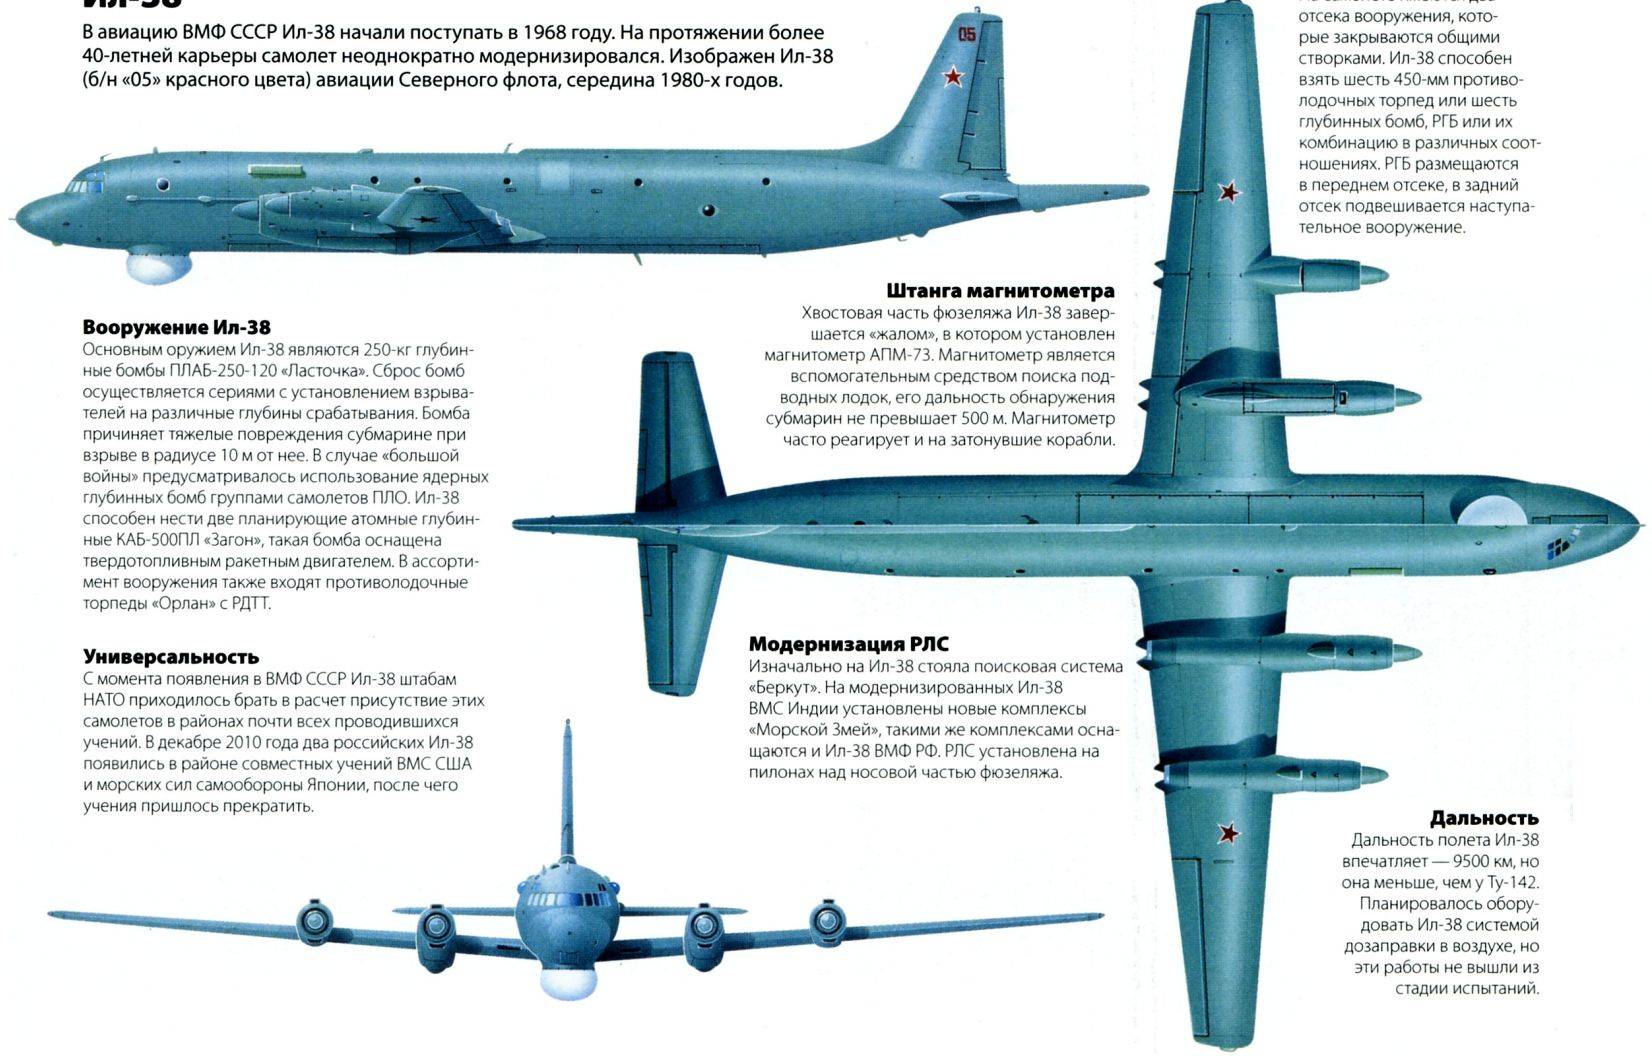 Ил-20м — самолет радиотехнической разведки. самолет-разведчик ил-20м: история и современность